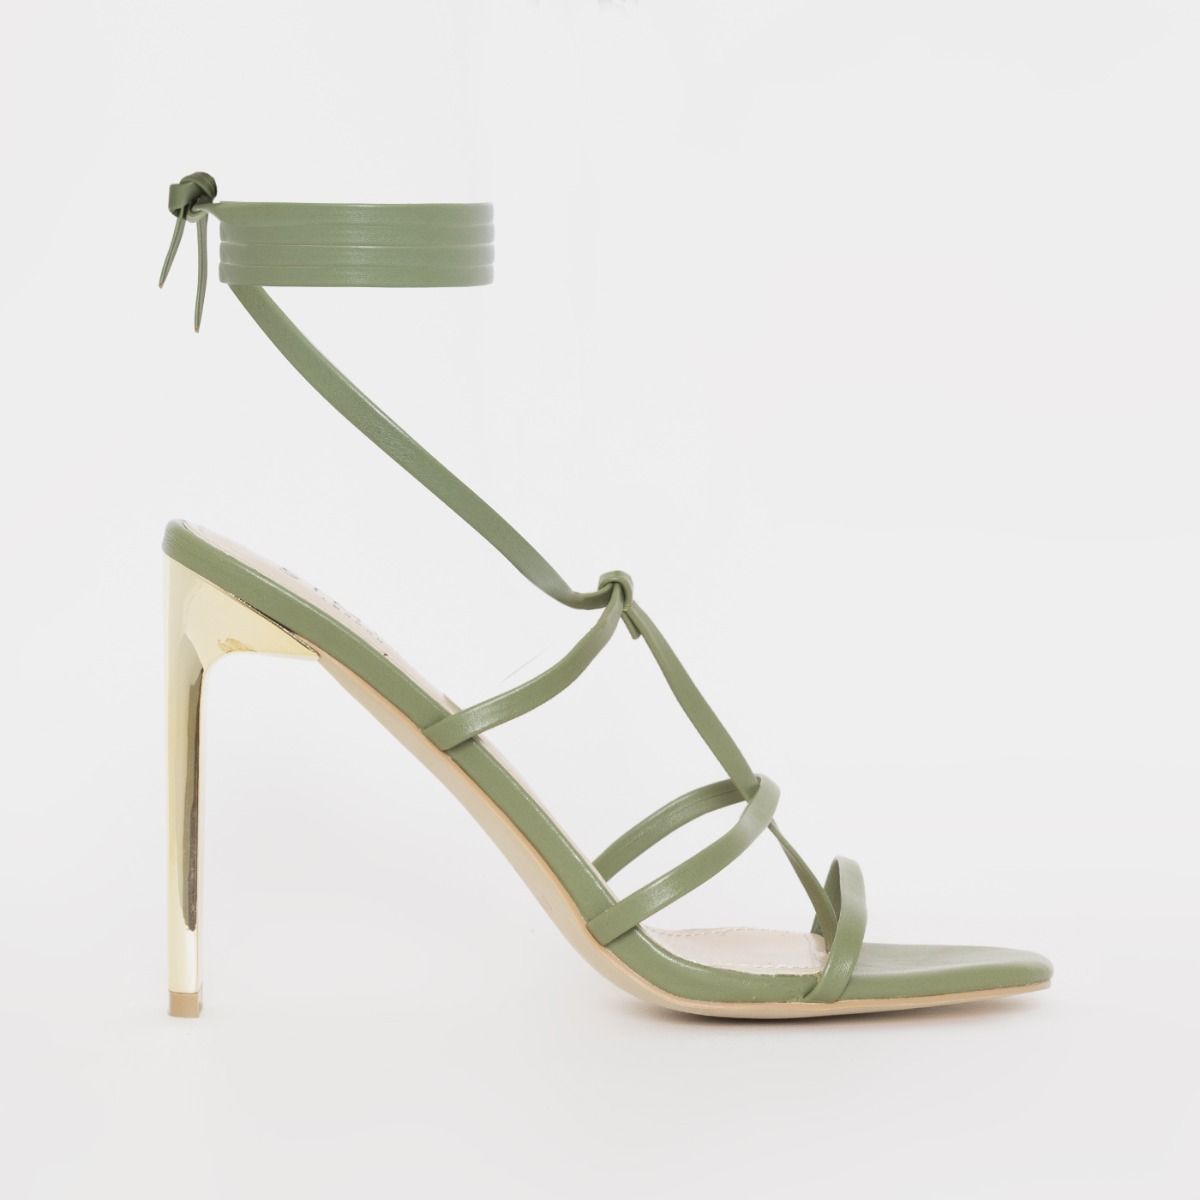 Jessica Simpson Daxton olive green heels. Open heel,... - Depop